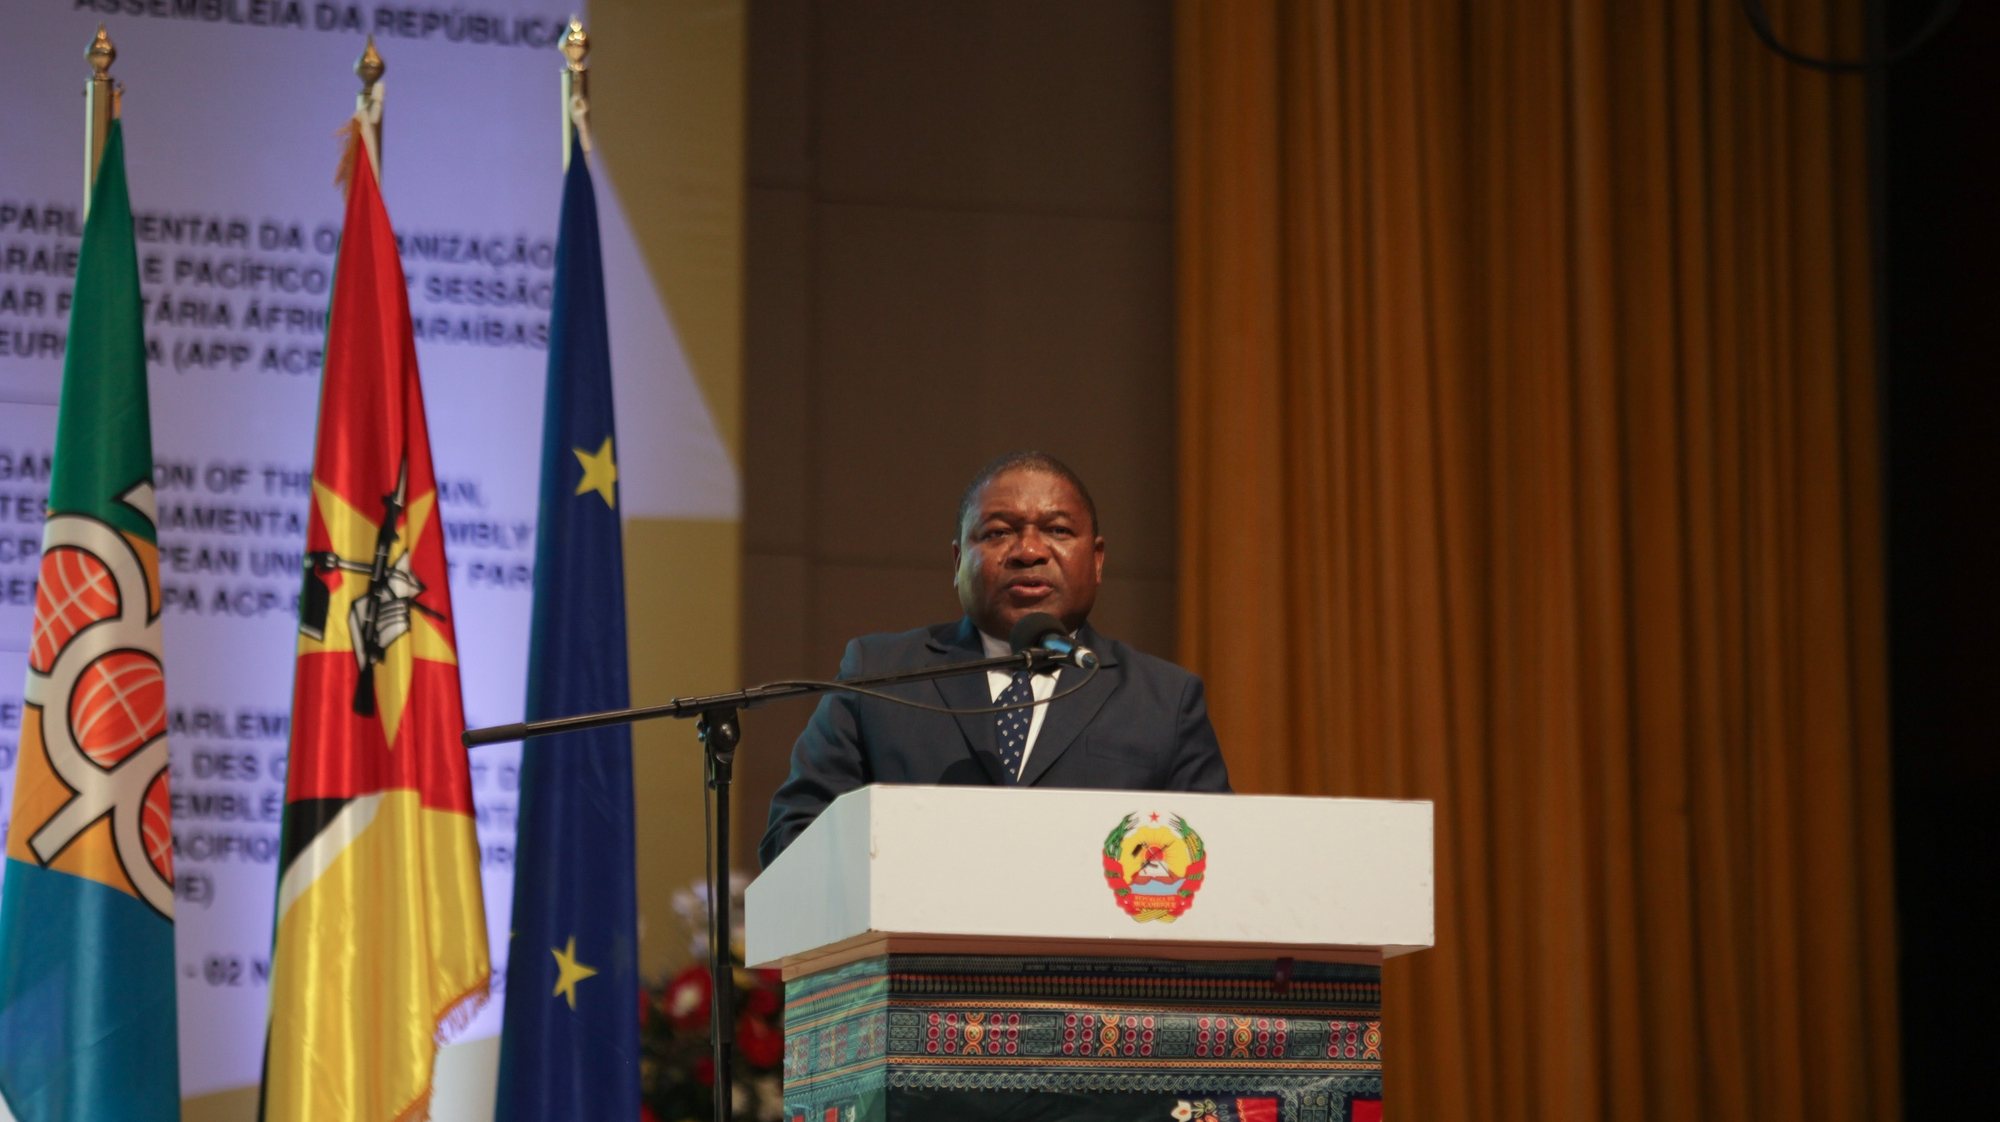 O Presidente de Moçambique, Filipe Nyusi, discursa na abertura da Assembleia Parlamentar Paritária ACP-UE, em Maputo, Moçambique, 31 de outubro de 2022. Os dois co-presidentes da Assembleia Parlamentar Paritária ACP-UE recomendaram hoje o reforço de organizações multilaterais, como o organismo que lideram, para responder às crises provocadas por um mundo de incertezas. LUÍSA NHANTUMBO/LUSA